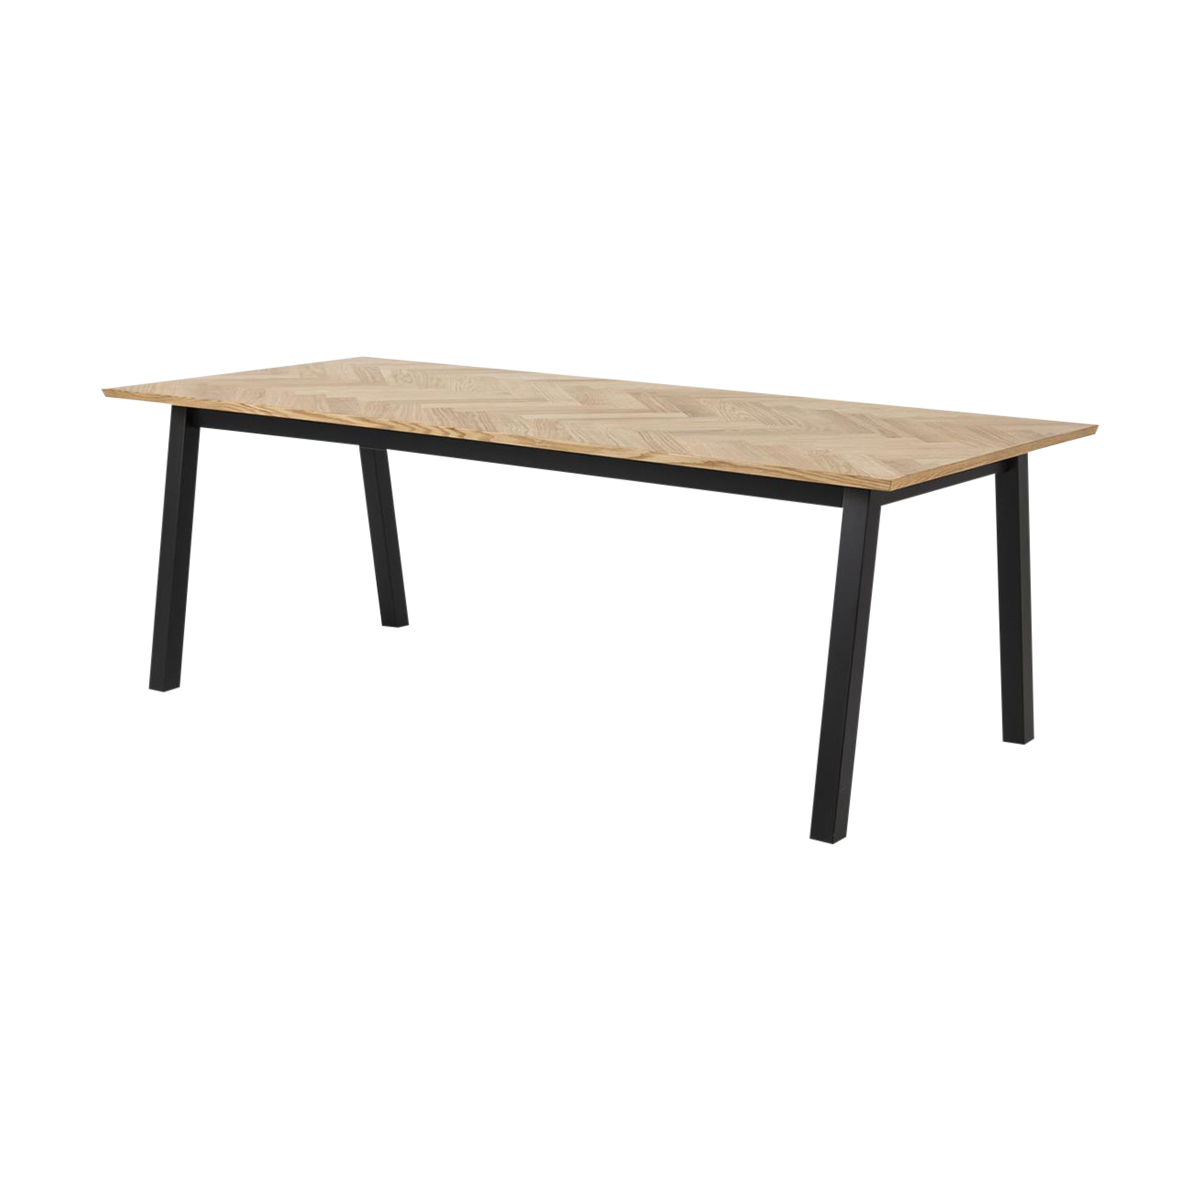 platform Schatting Incubus Hilly houten eettafel visgraat - 220 x 95 cm | Gewoonstijl